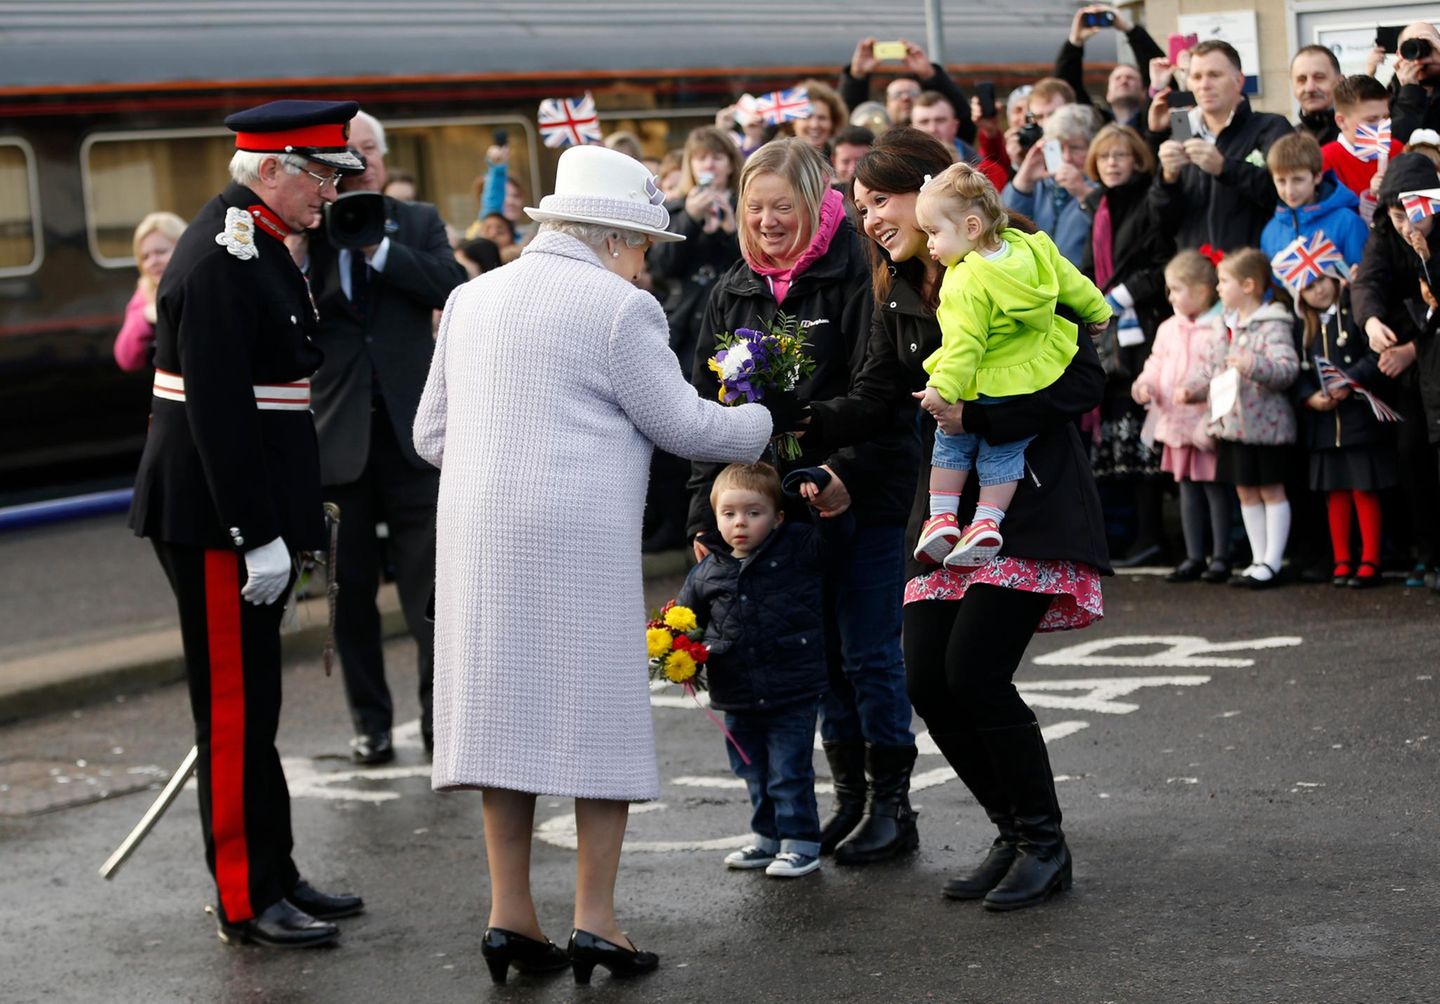 20. November 2014: Queen Elizabeth und Prinz Philip verbringen ihren 67. Hochzeitstag in Schottland. Mit dem Zug sind sie nach Elgin gefahren, wo es am Bahnsteig einige Blumen zur Begrüßung gibt. Elfi und Sienna, die die Sträuße überreichen sollen, scheinen aber ein wenig verschüchtert beim Auftritt der Queen. Ihre Mütter helfen aber.